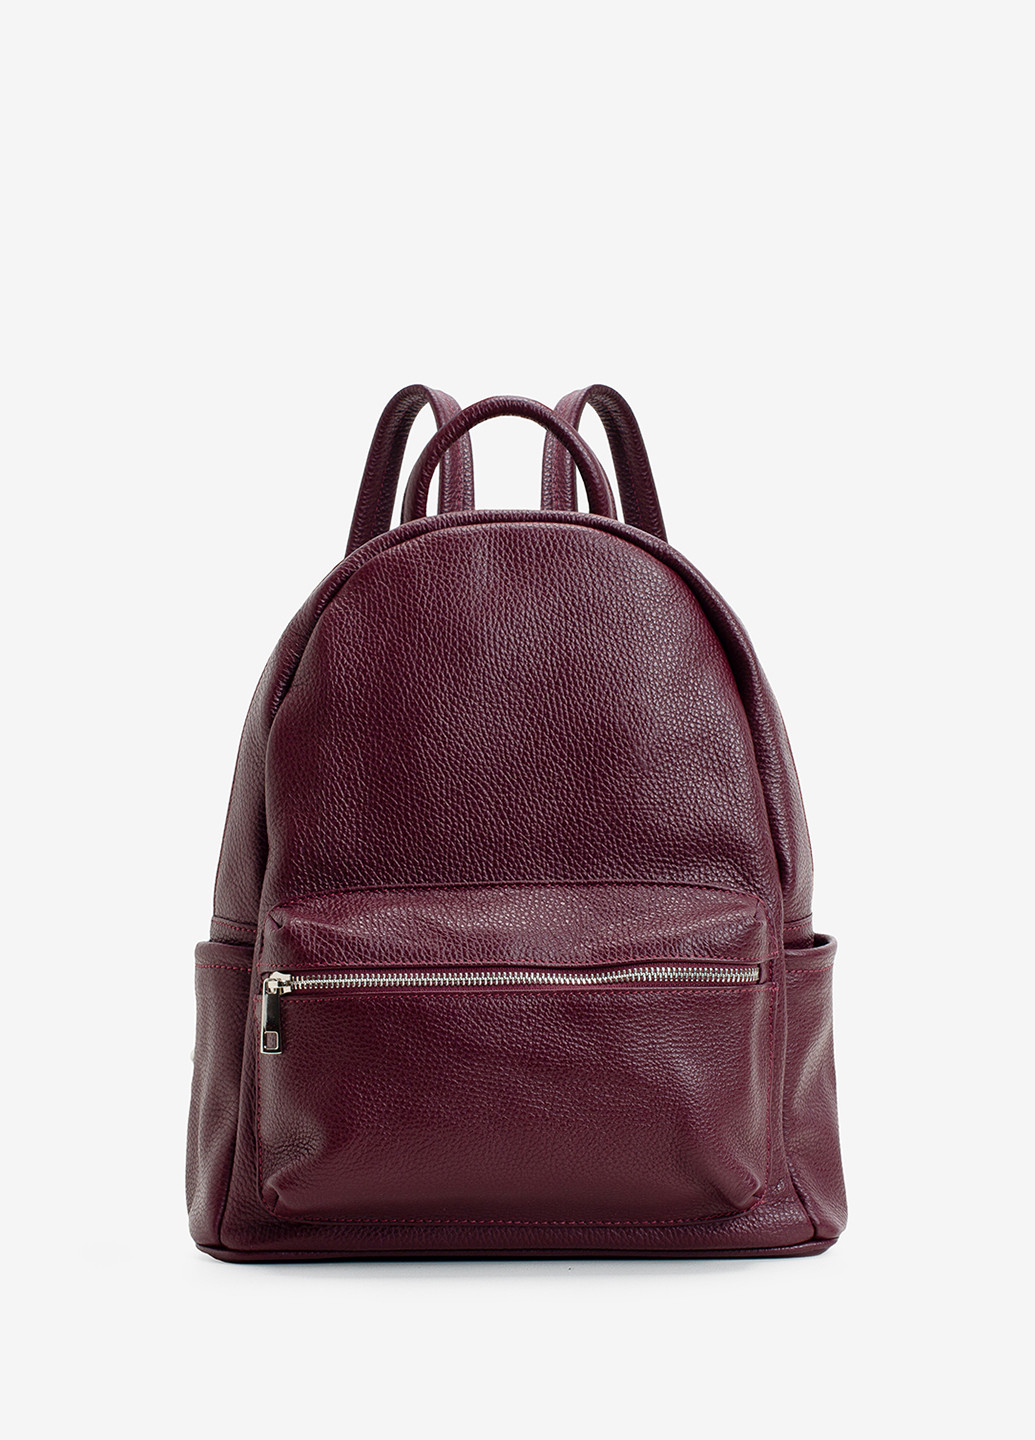 Рюкзак женский кожаный Backpack Regina Notte (249624405)